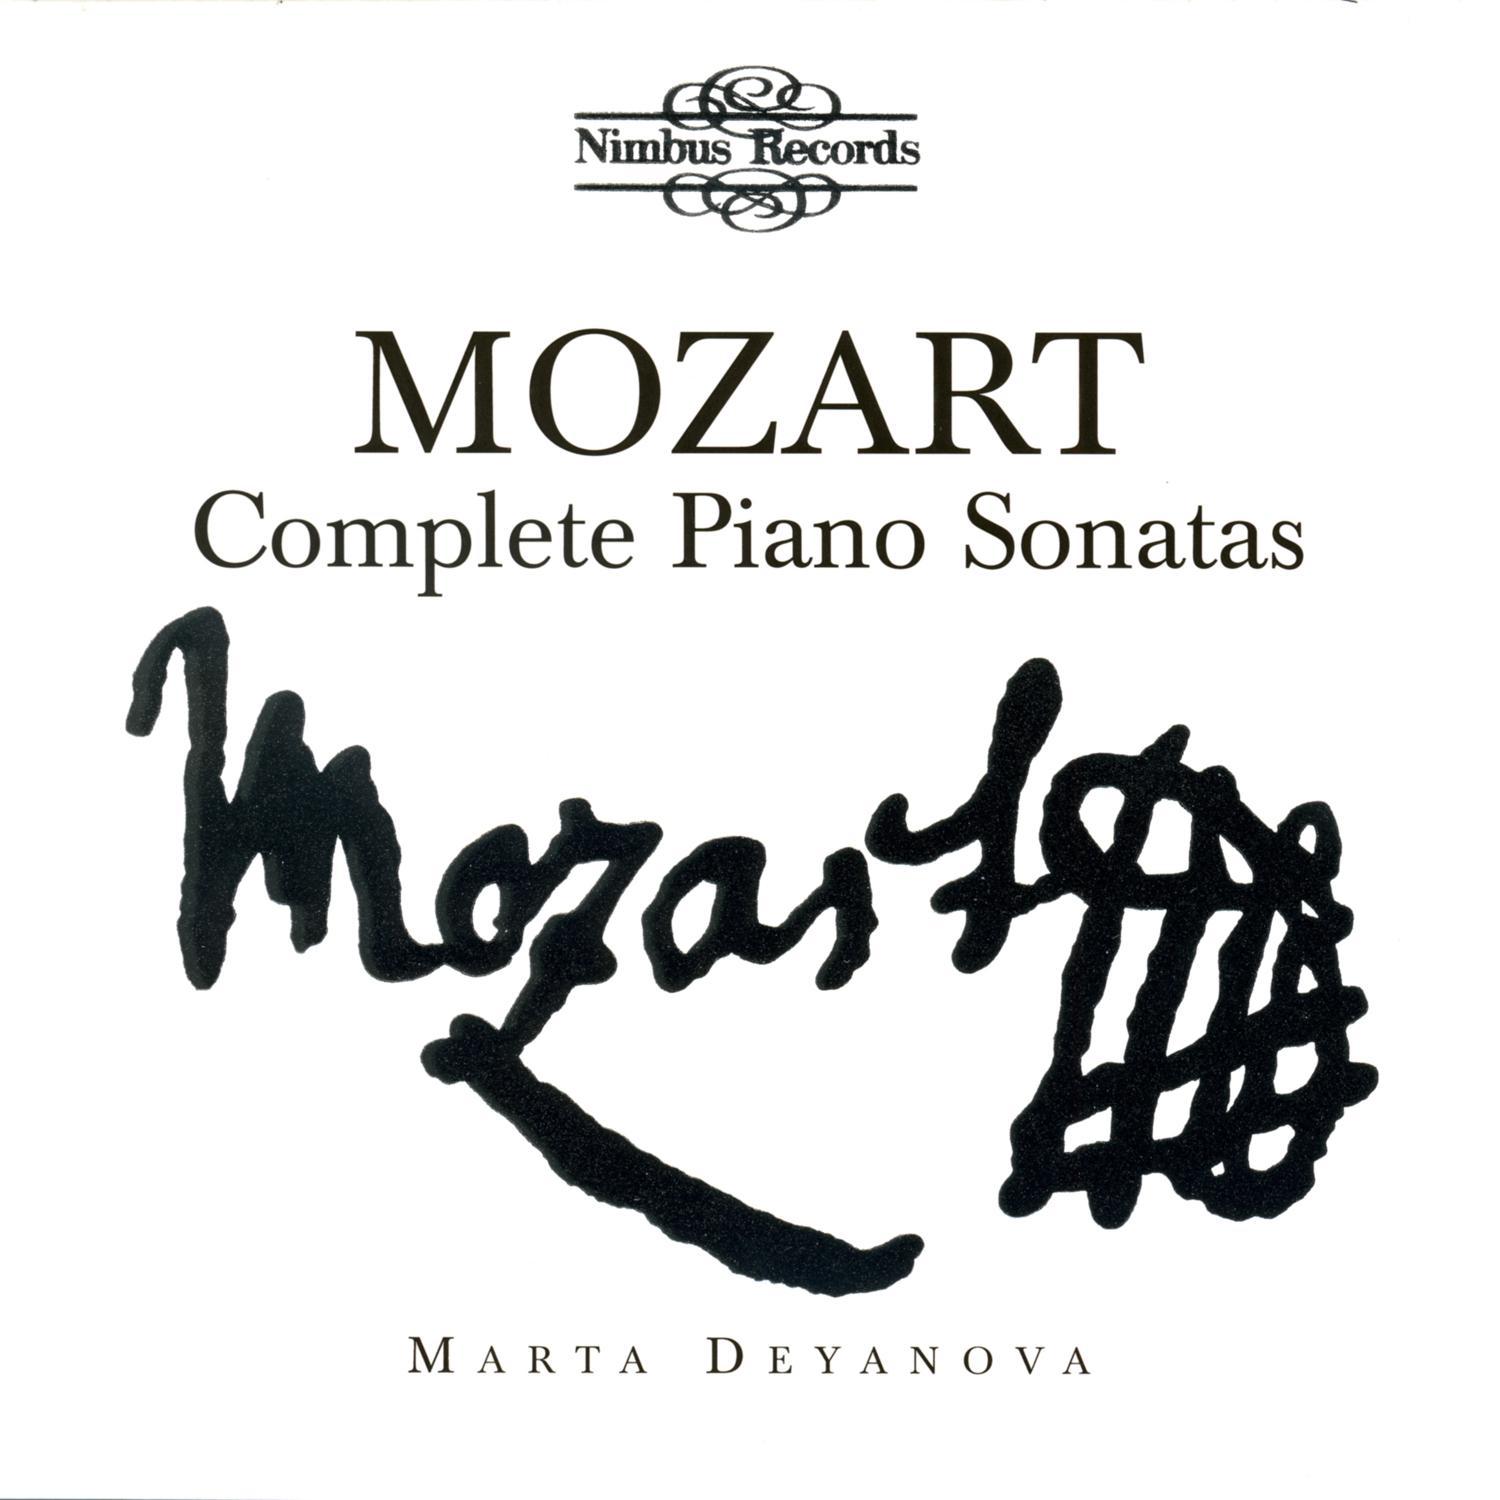 Piano Sonata in F Major, K. 280/189e: I. Allegro assai